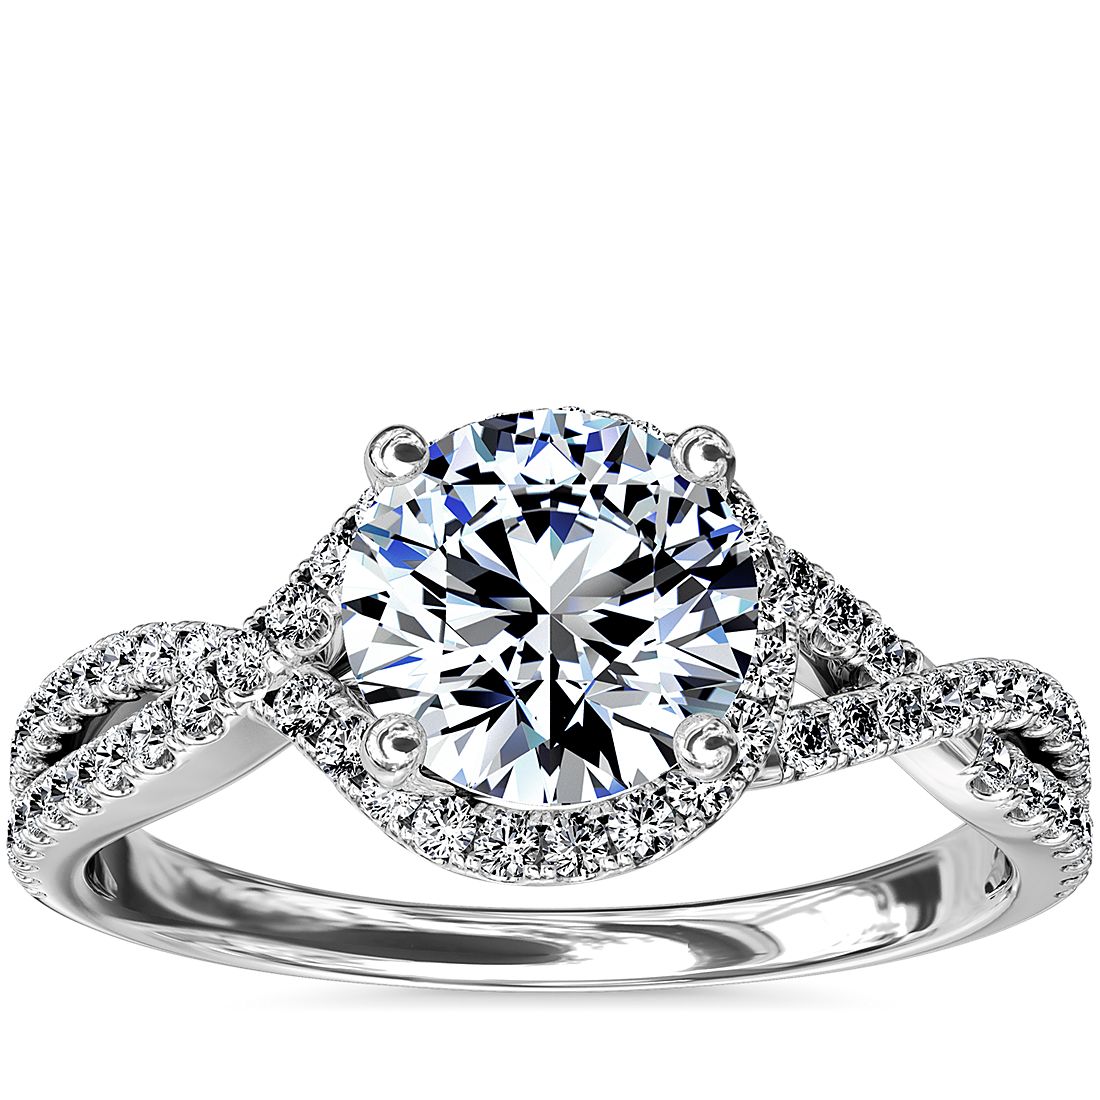 3ct Round Diamond 14k White Gold Finish Halo Engagement Wedding Bridal Ring Set 